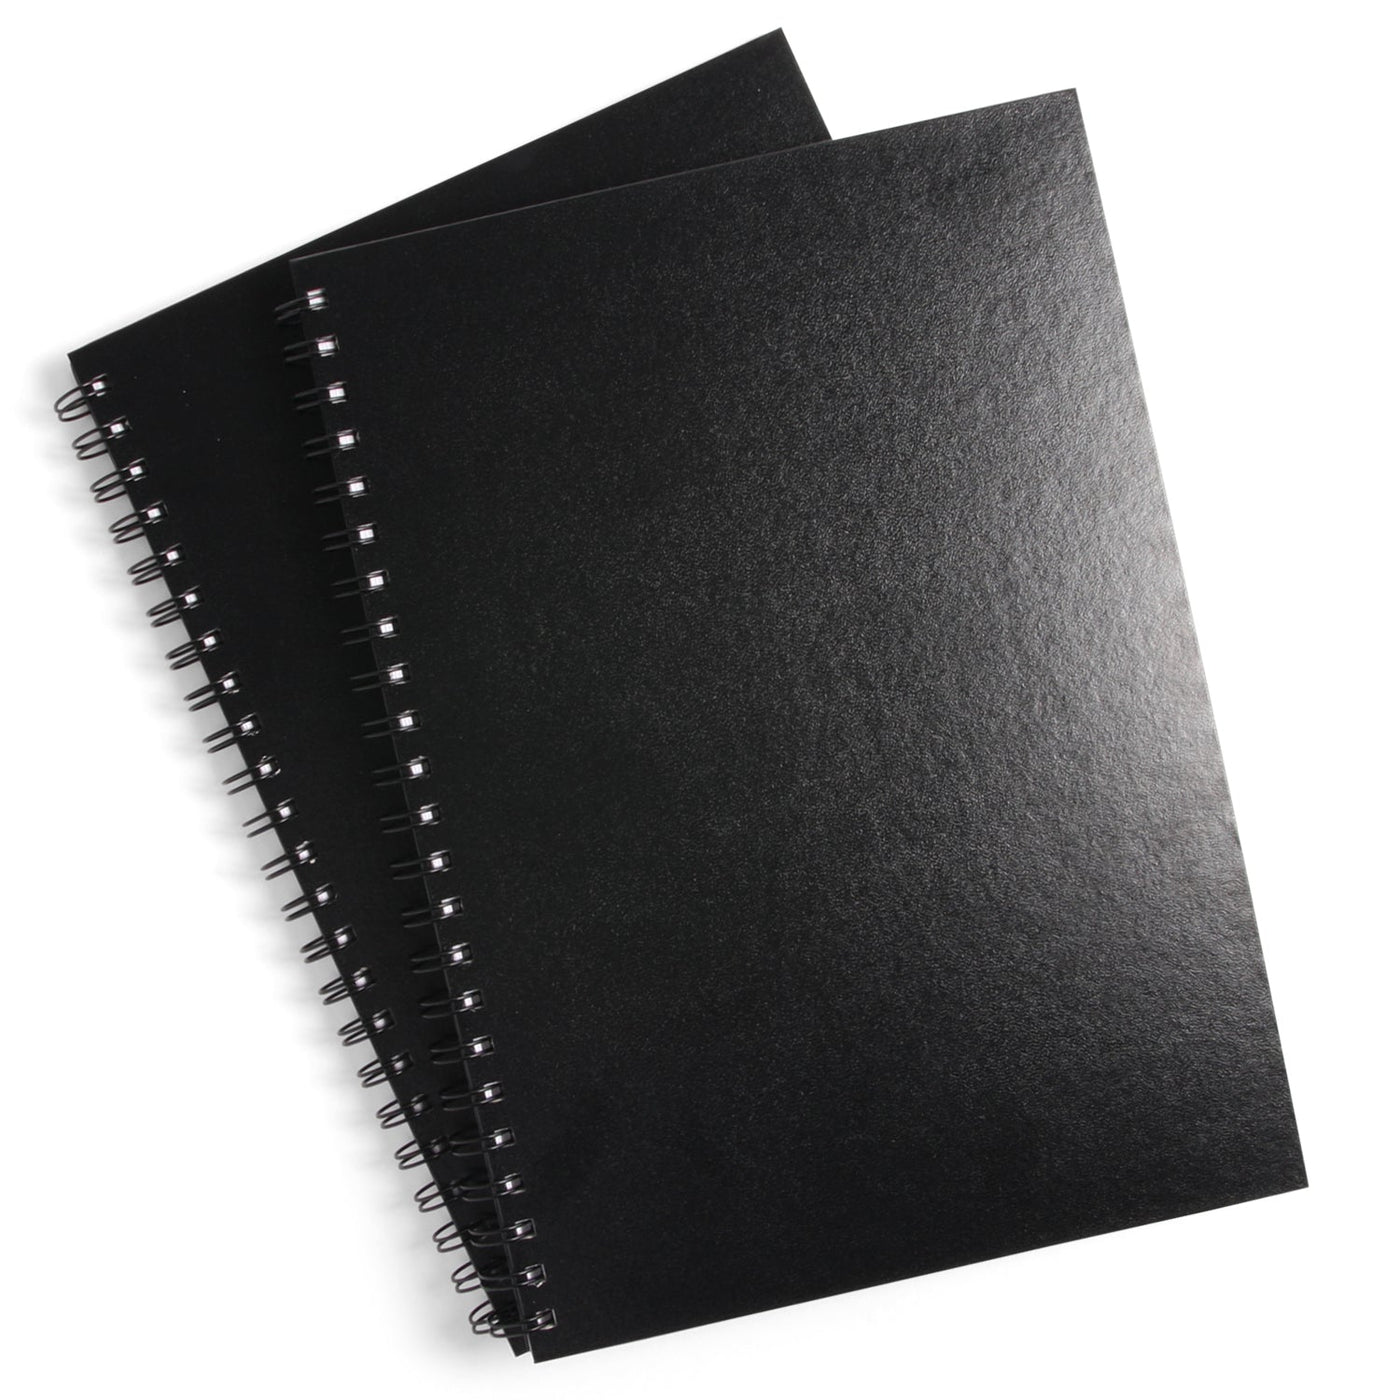 A3 Spiral-Bound Hardcover Sketchbook - 2 Pack*